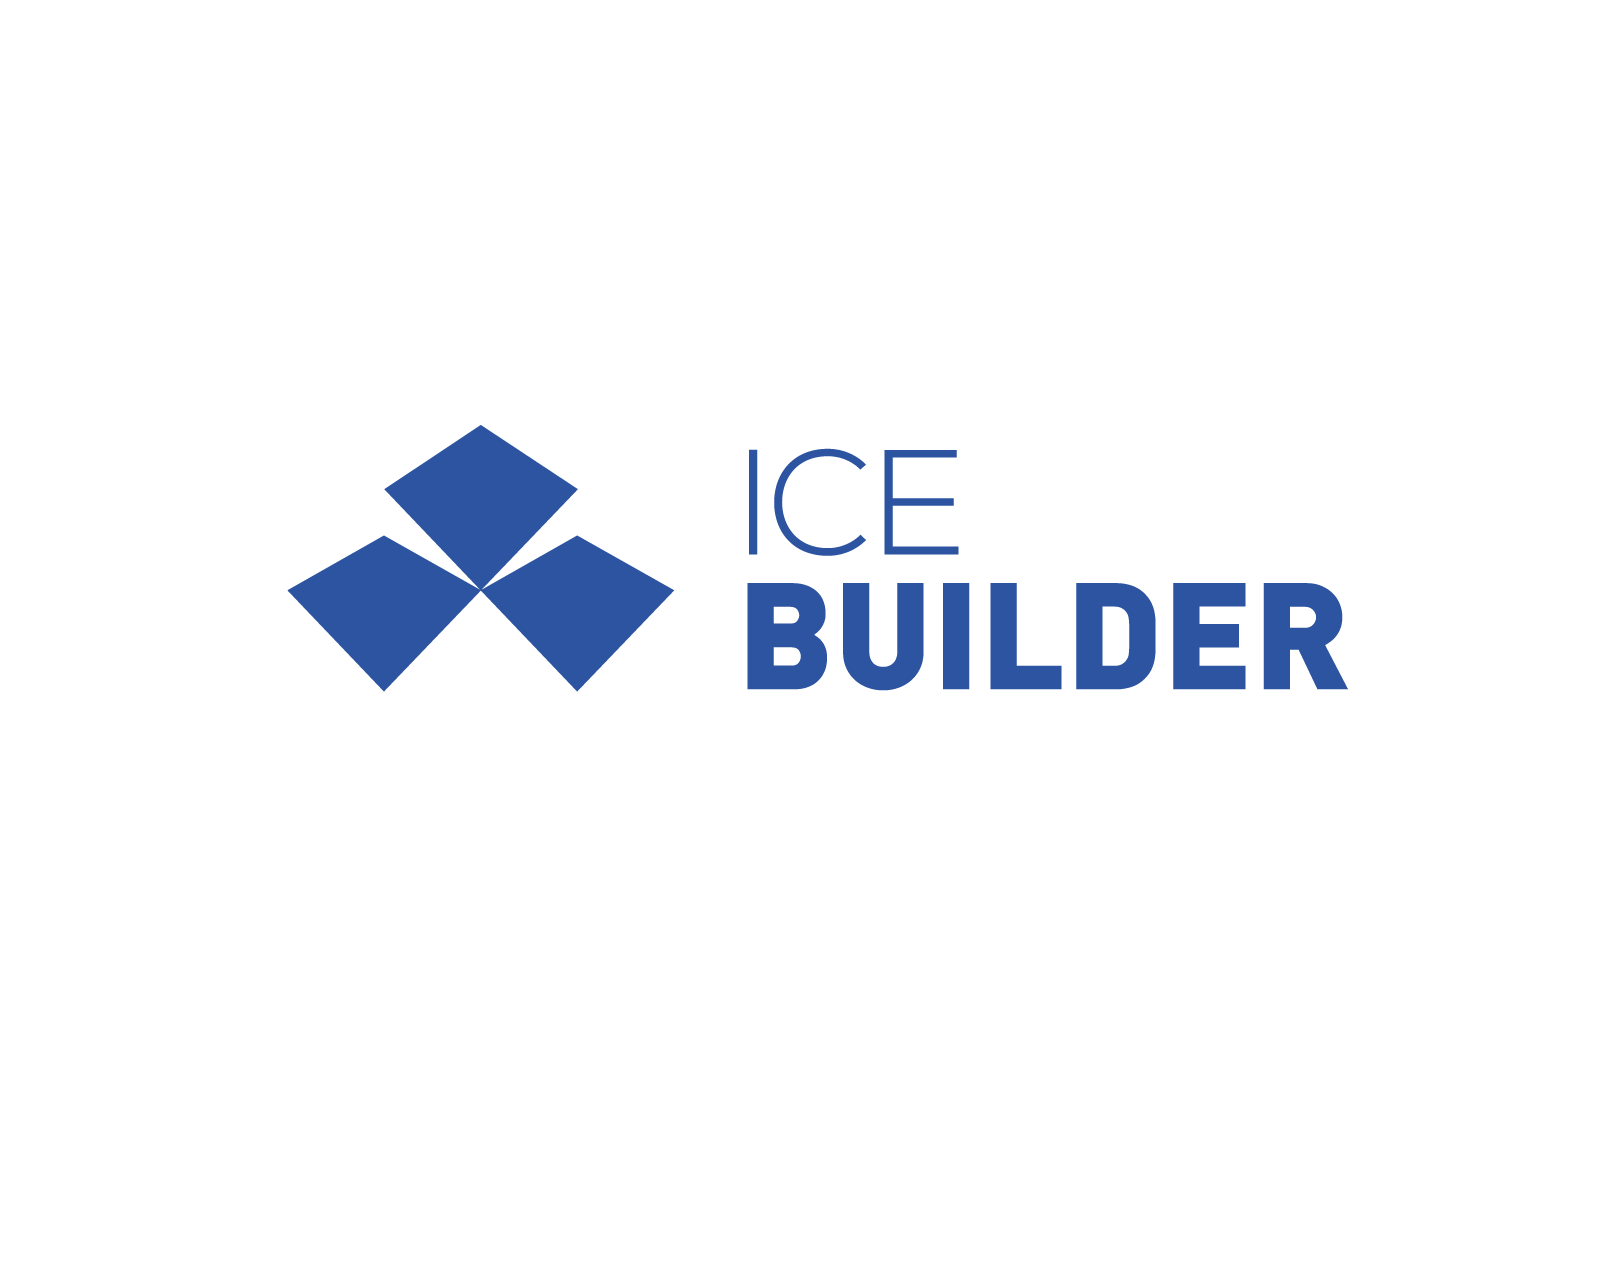 ICE BUILDER